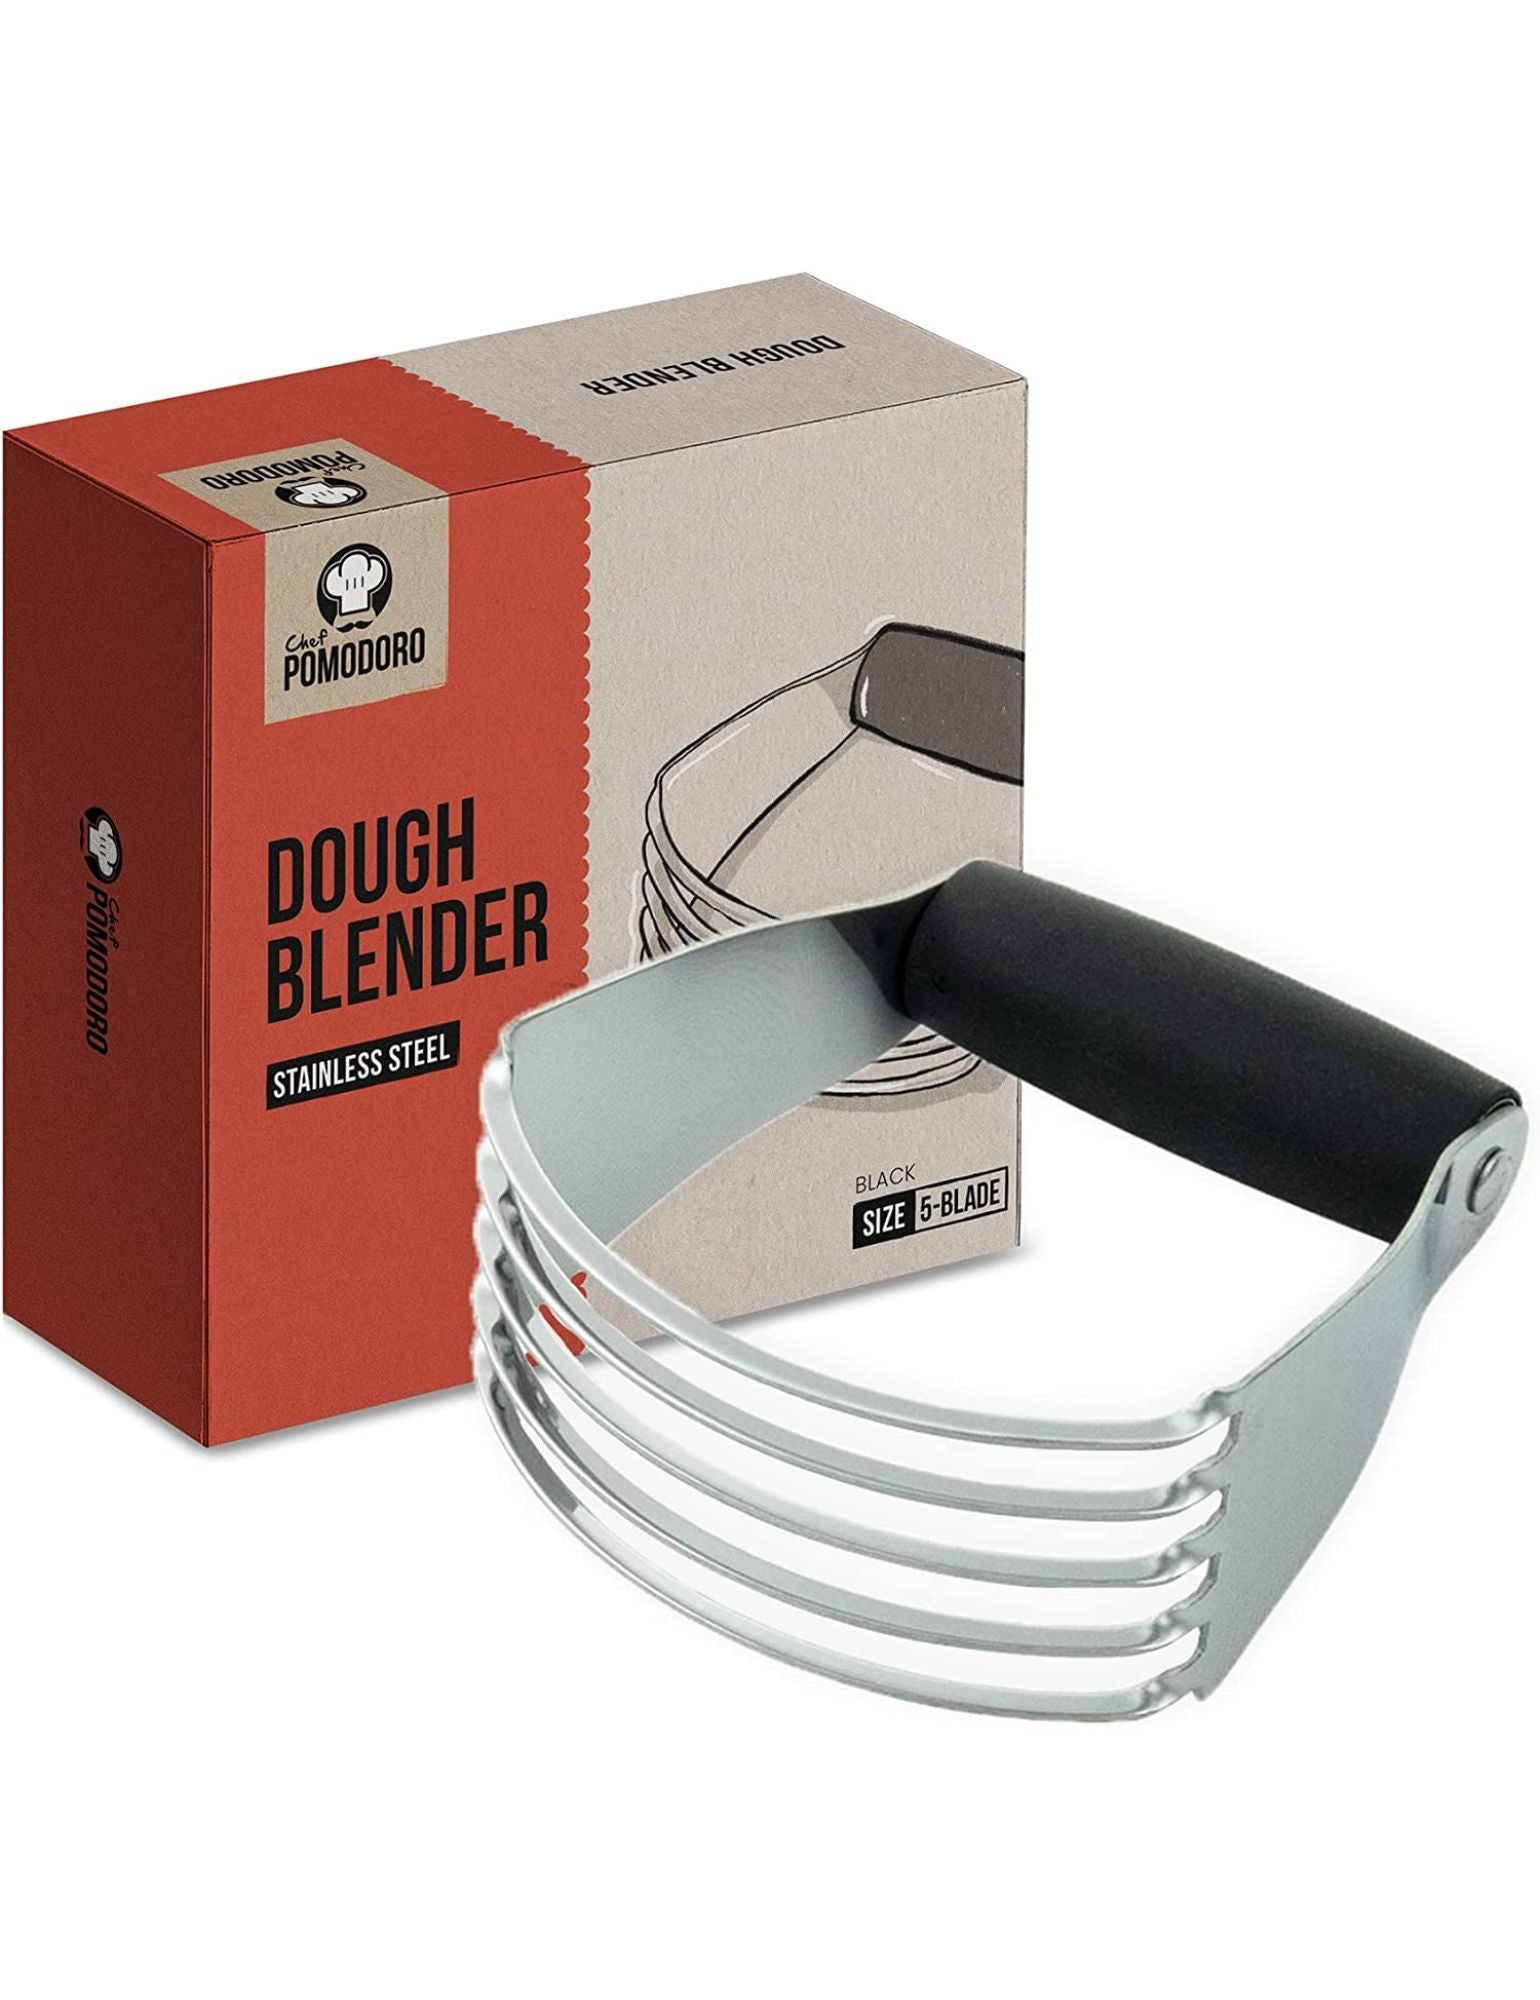 Pastry Blender, Multi-Purpose Dough Blender Mixer